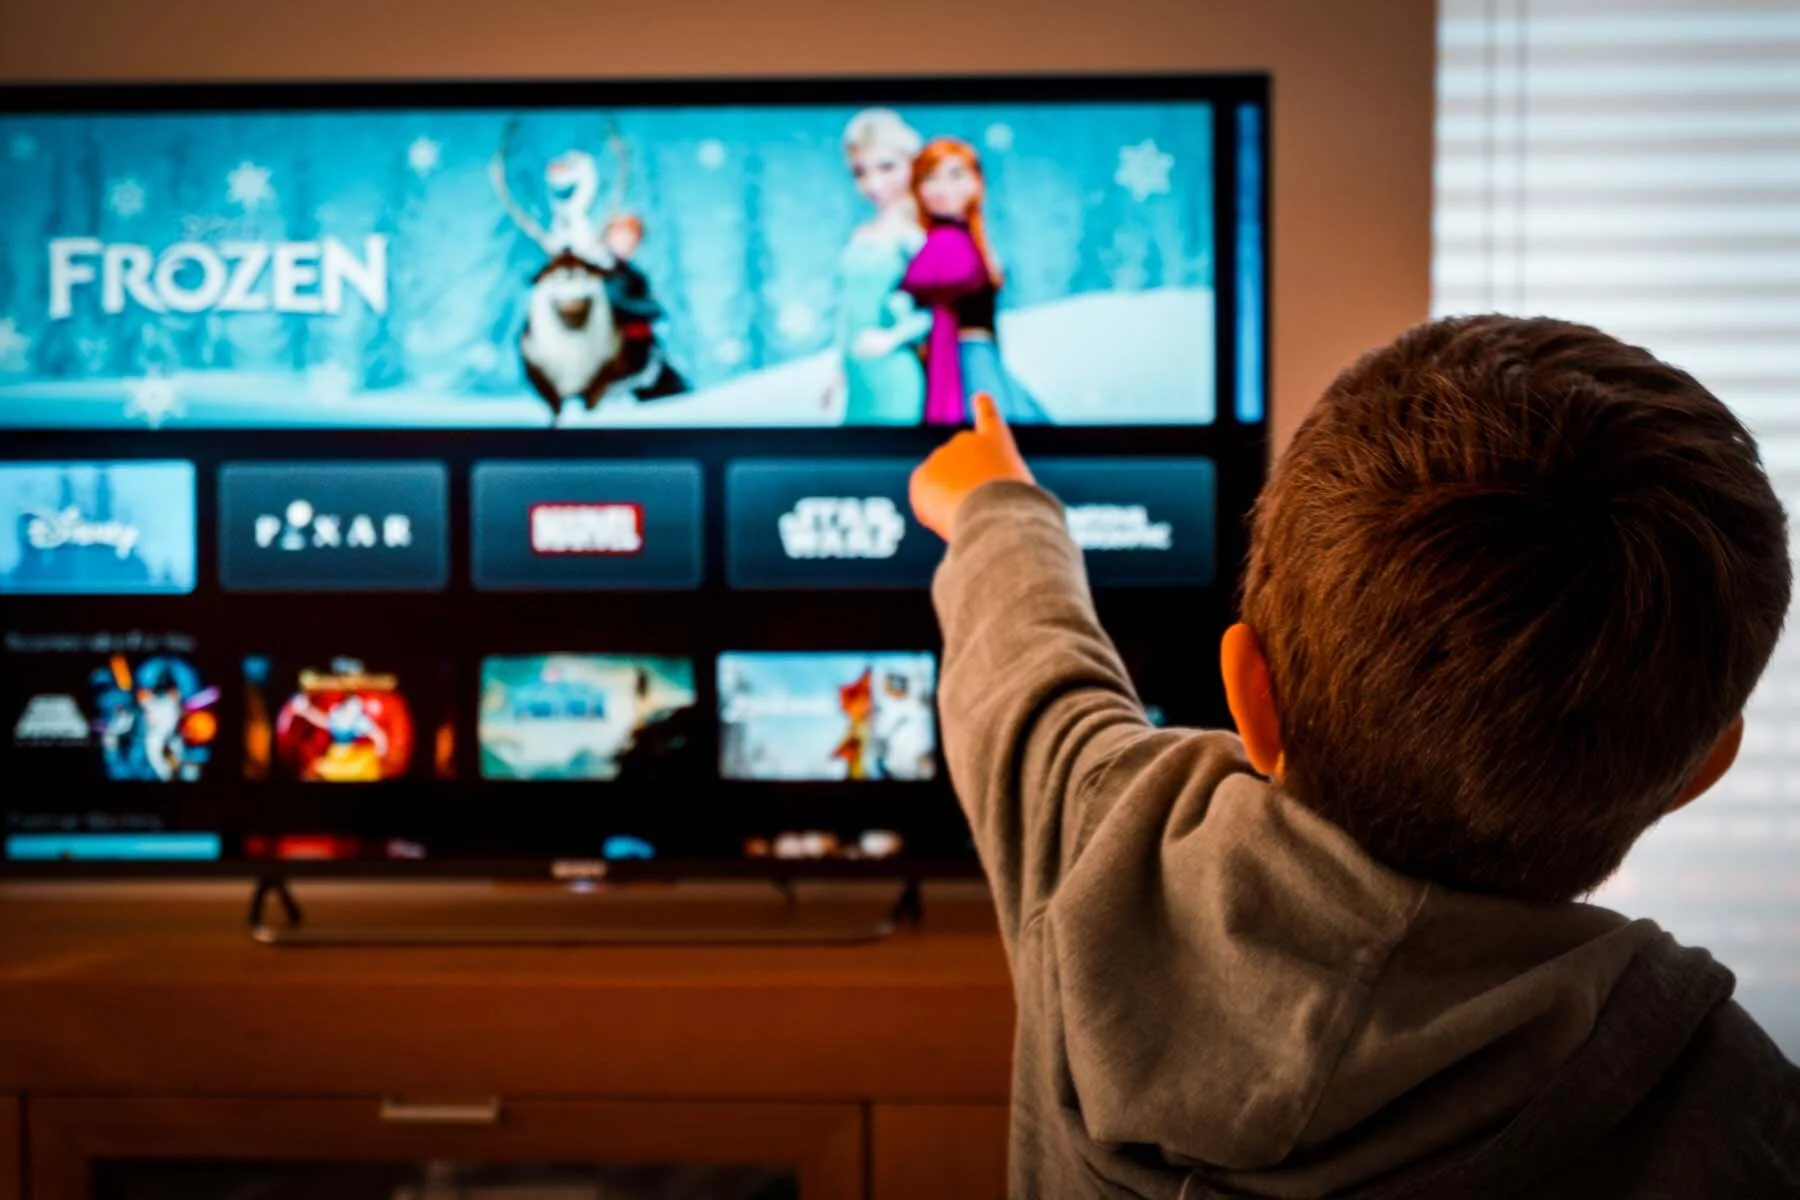 Child watching Frozen on TV in Austria